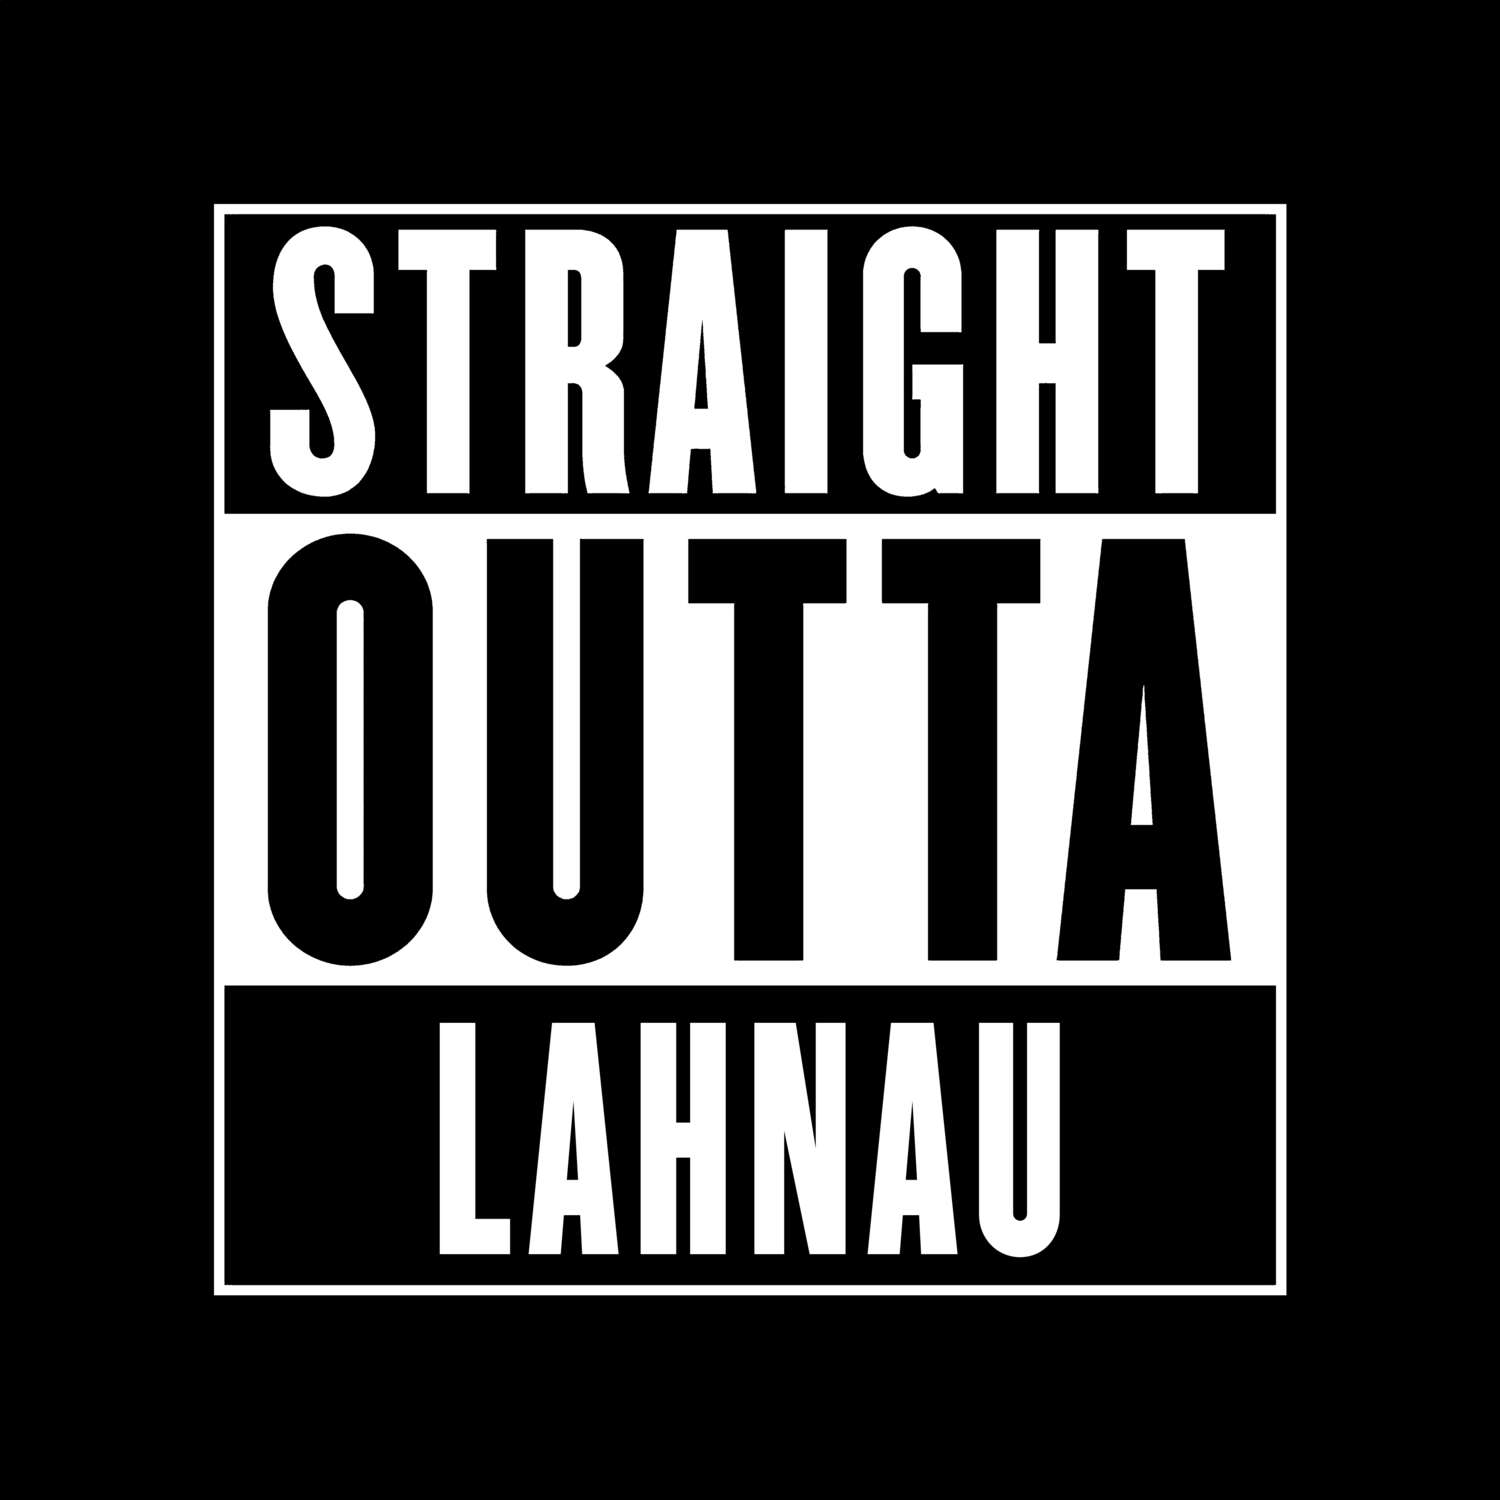 Lahnau T-Shirt »Straight Outta«